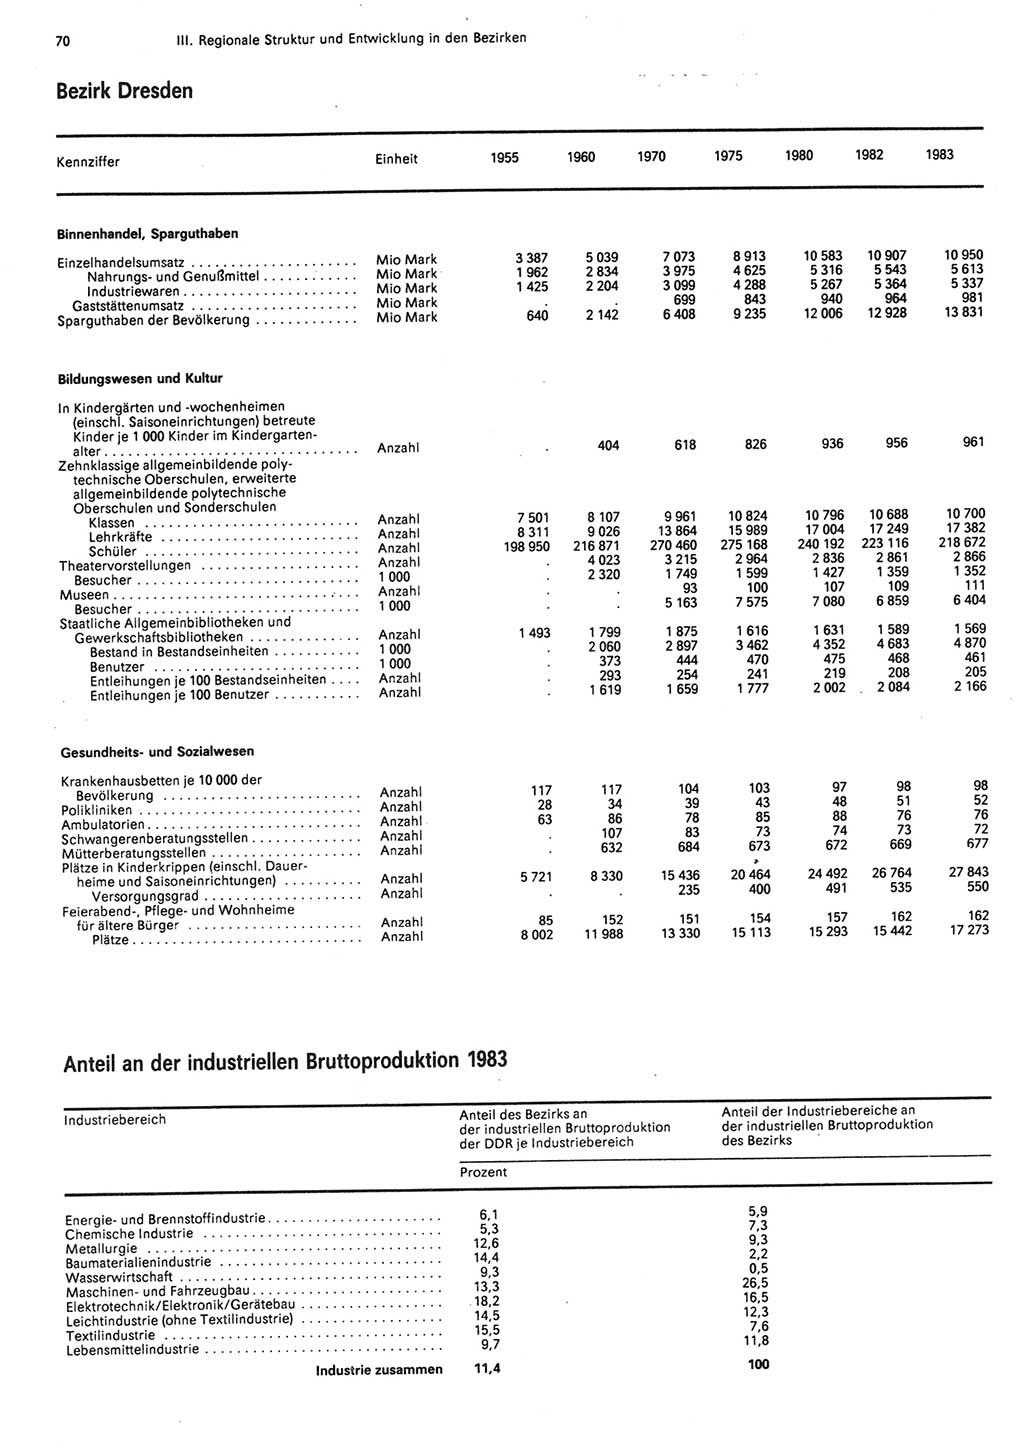 Statistisches Jahrbuch der Deutschen Demokratischen Republik (DDR) 1984, Seite 70 (Stat. Jb. DDR 1984, S. 70)